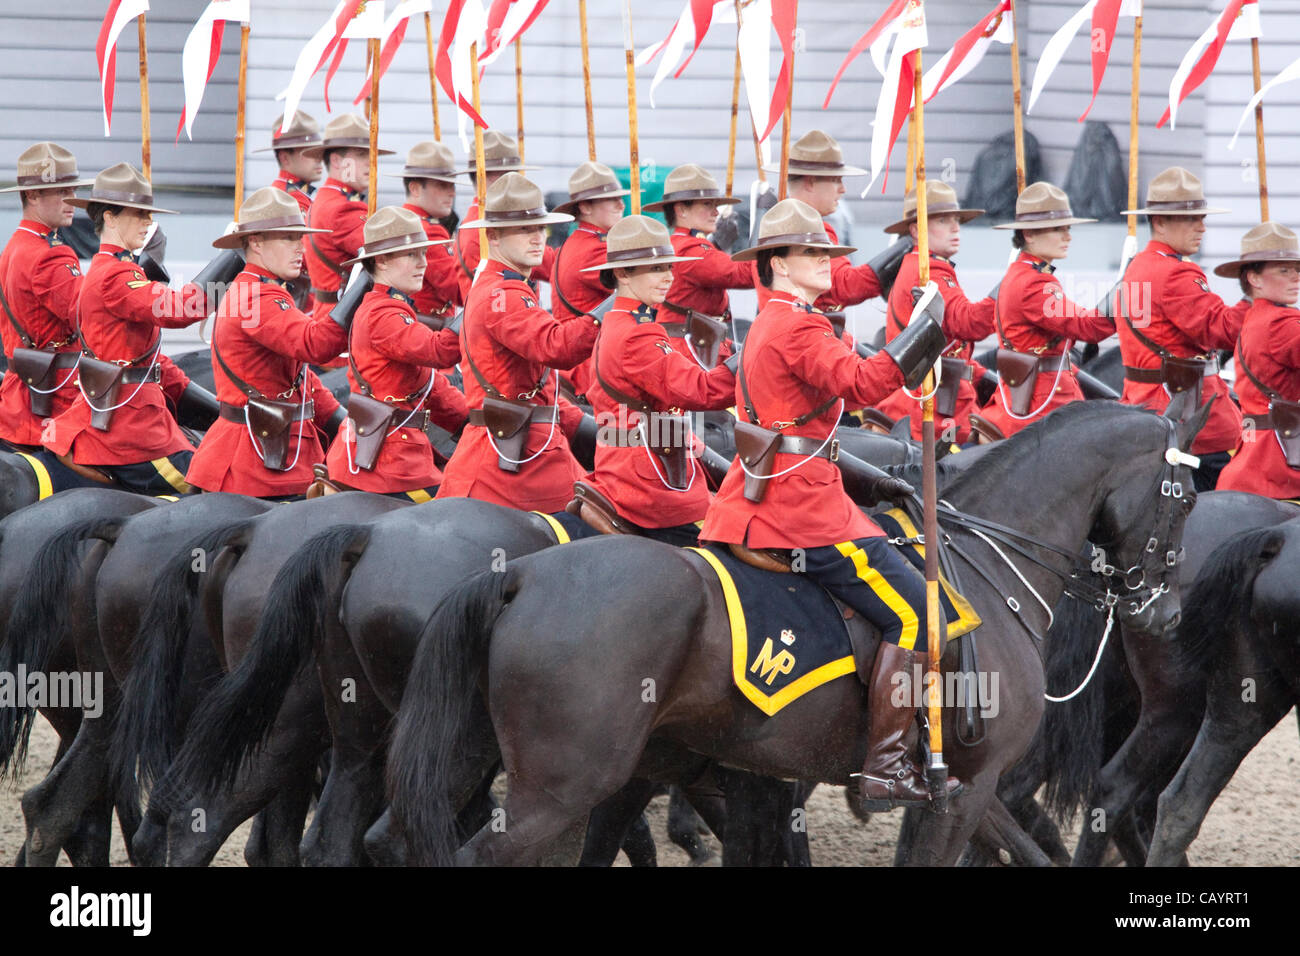 Jeudi 10 mai 2012. La Gendarmerie royale du Canada (GRC) effectuer le Carrousel au Royal Windsor Horse Show 2012. Parc Windsor, Berkshire, Angleterre, Royaume-Uni. Banque D'Images